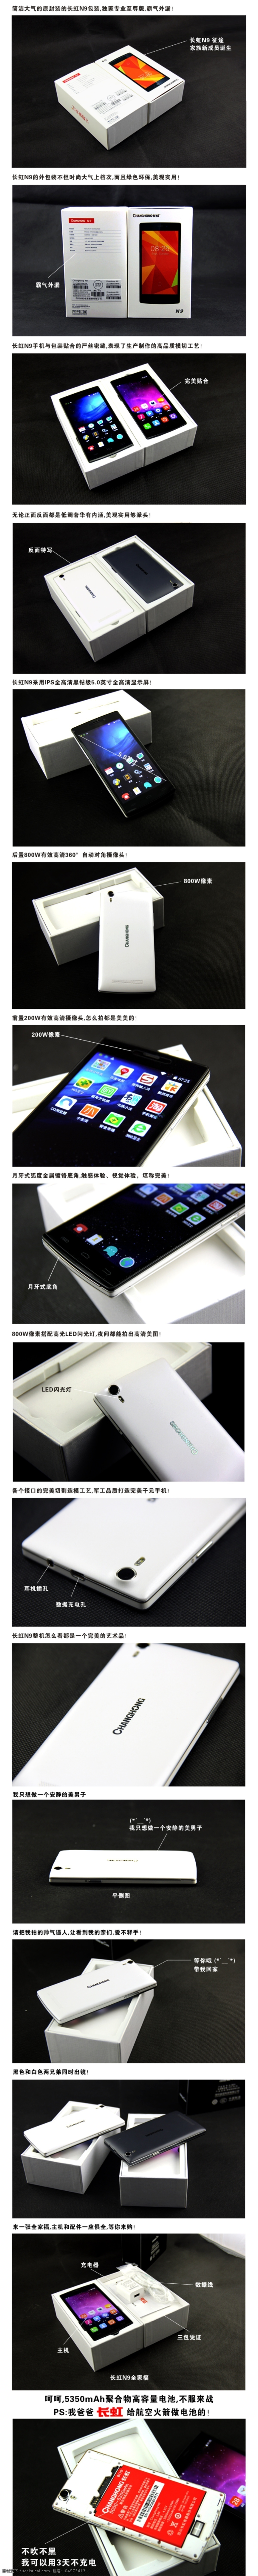 长虹 n9 手机 实物 拍摄 详情 页 原创设计 原创淘宝设计